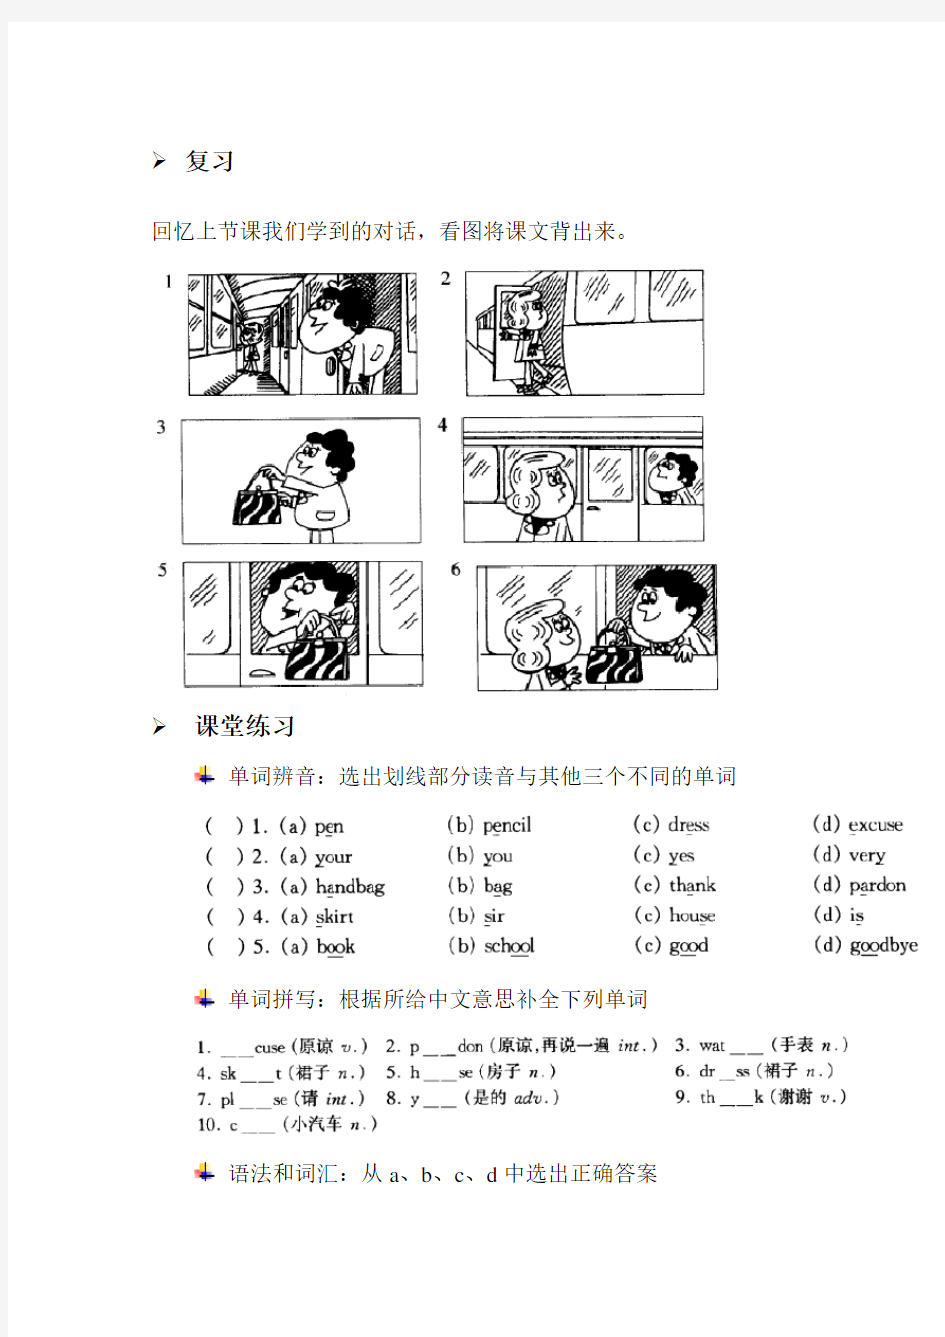 新概念英语第一册lesson 1-2练习题